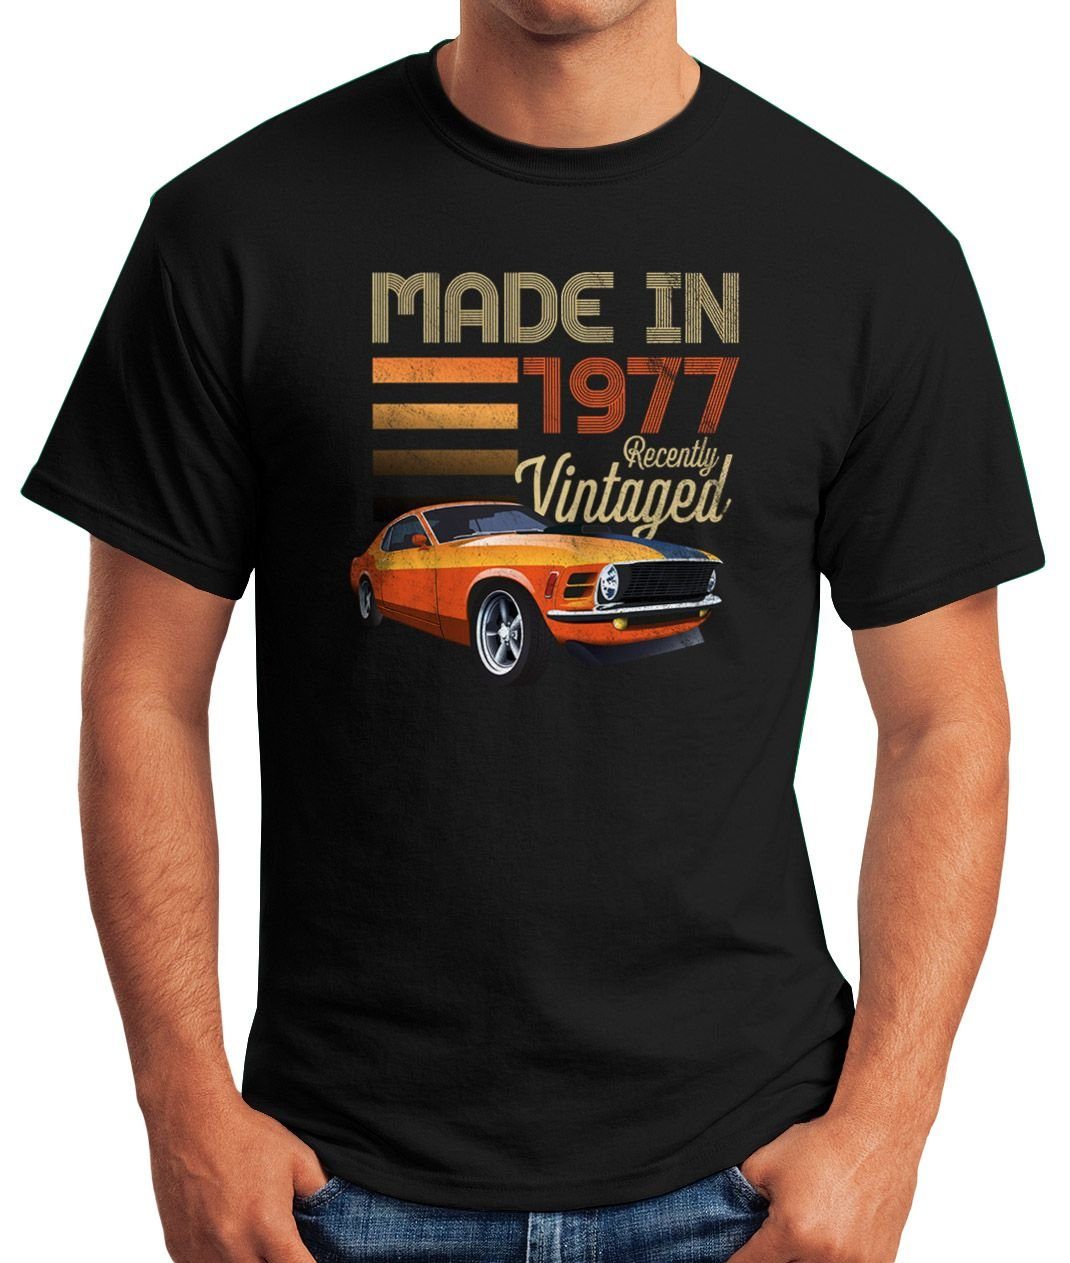 Oldtimer Herren T-Shirt Fun-Shirt Geburtstag Auto Print-Shirt 70er schwarz Print siebziger 1977 MoonWorks Moonworks® mit Vintage Retro